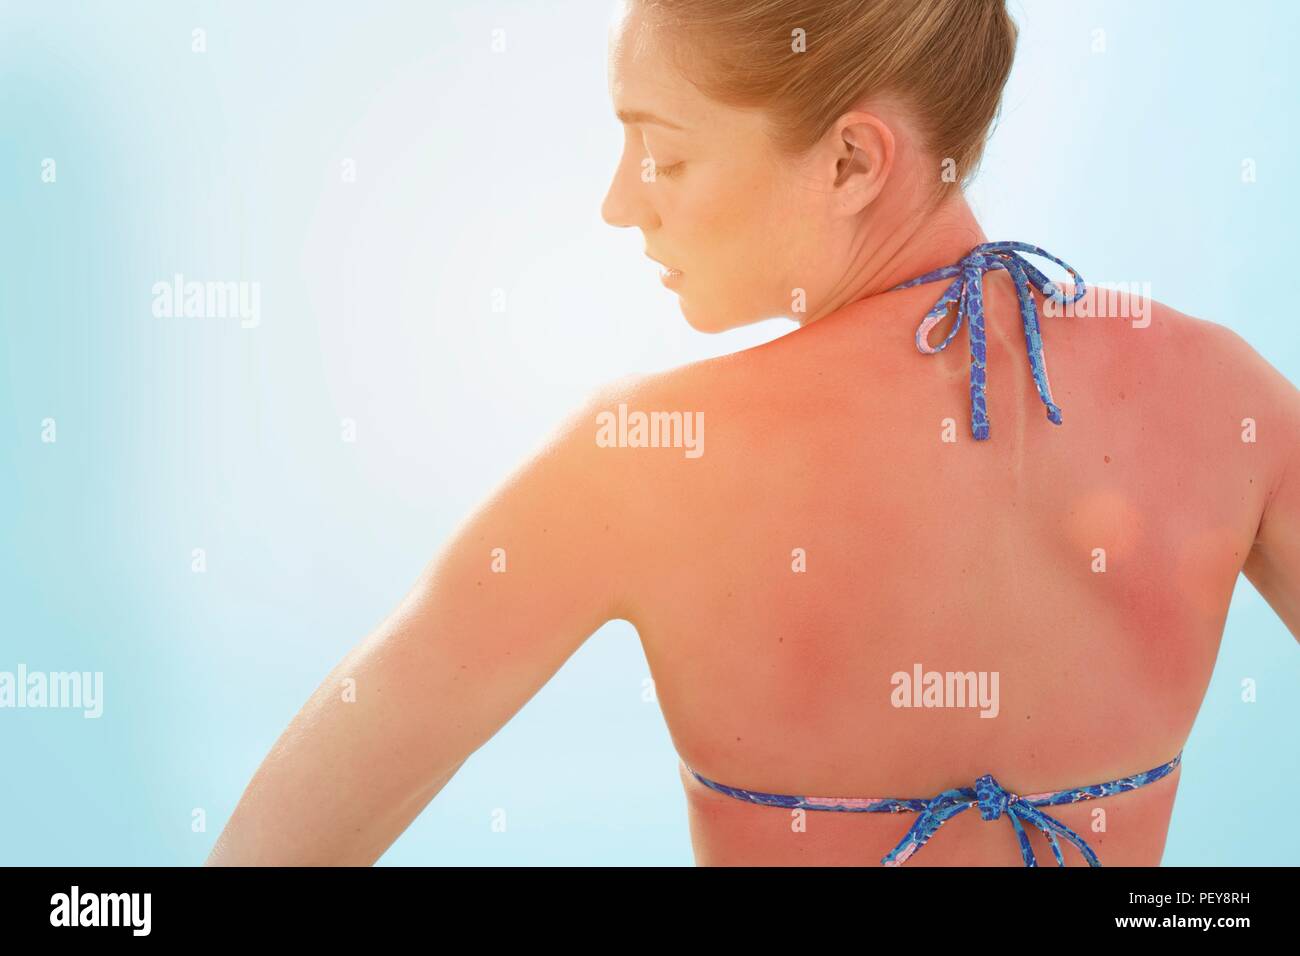 Mujer con la espalda quemada, vista trasera. Foto de stock